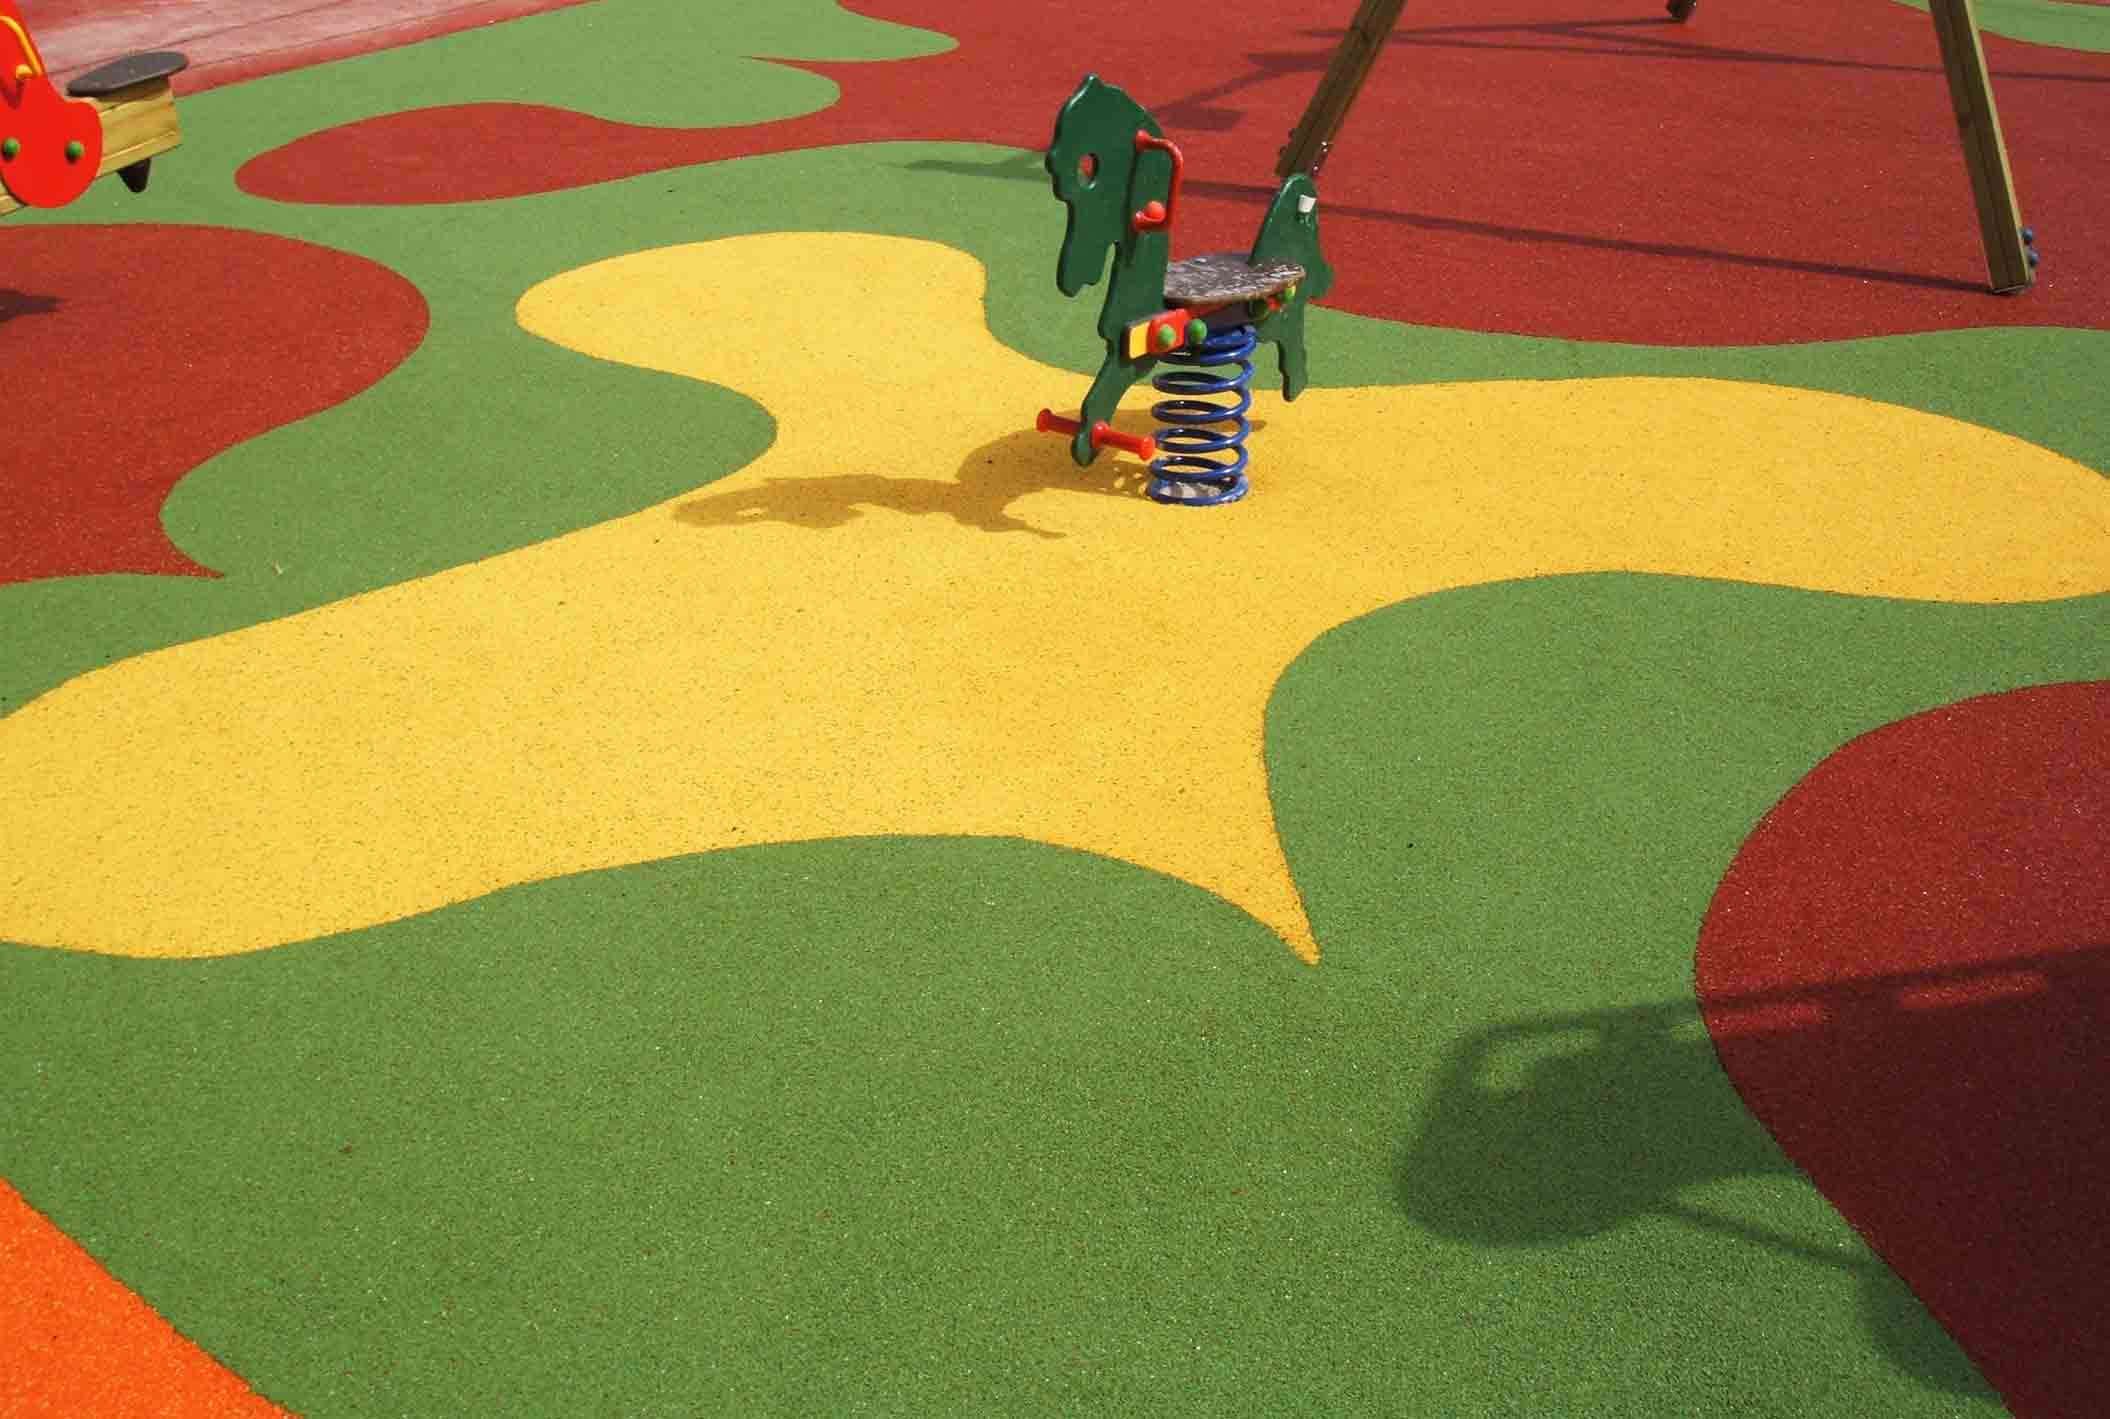 Nuevos suelos para reforzar la seguridad en los parques infantiles